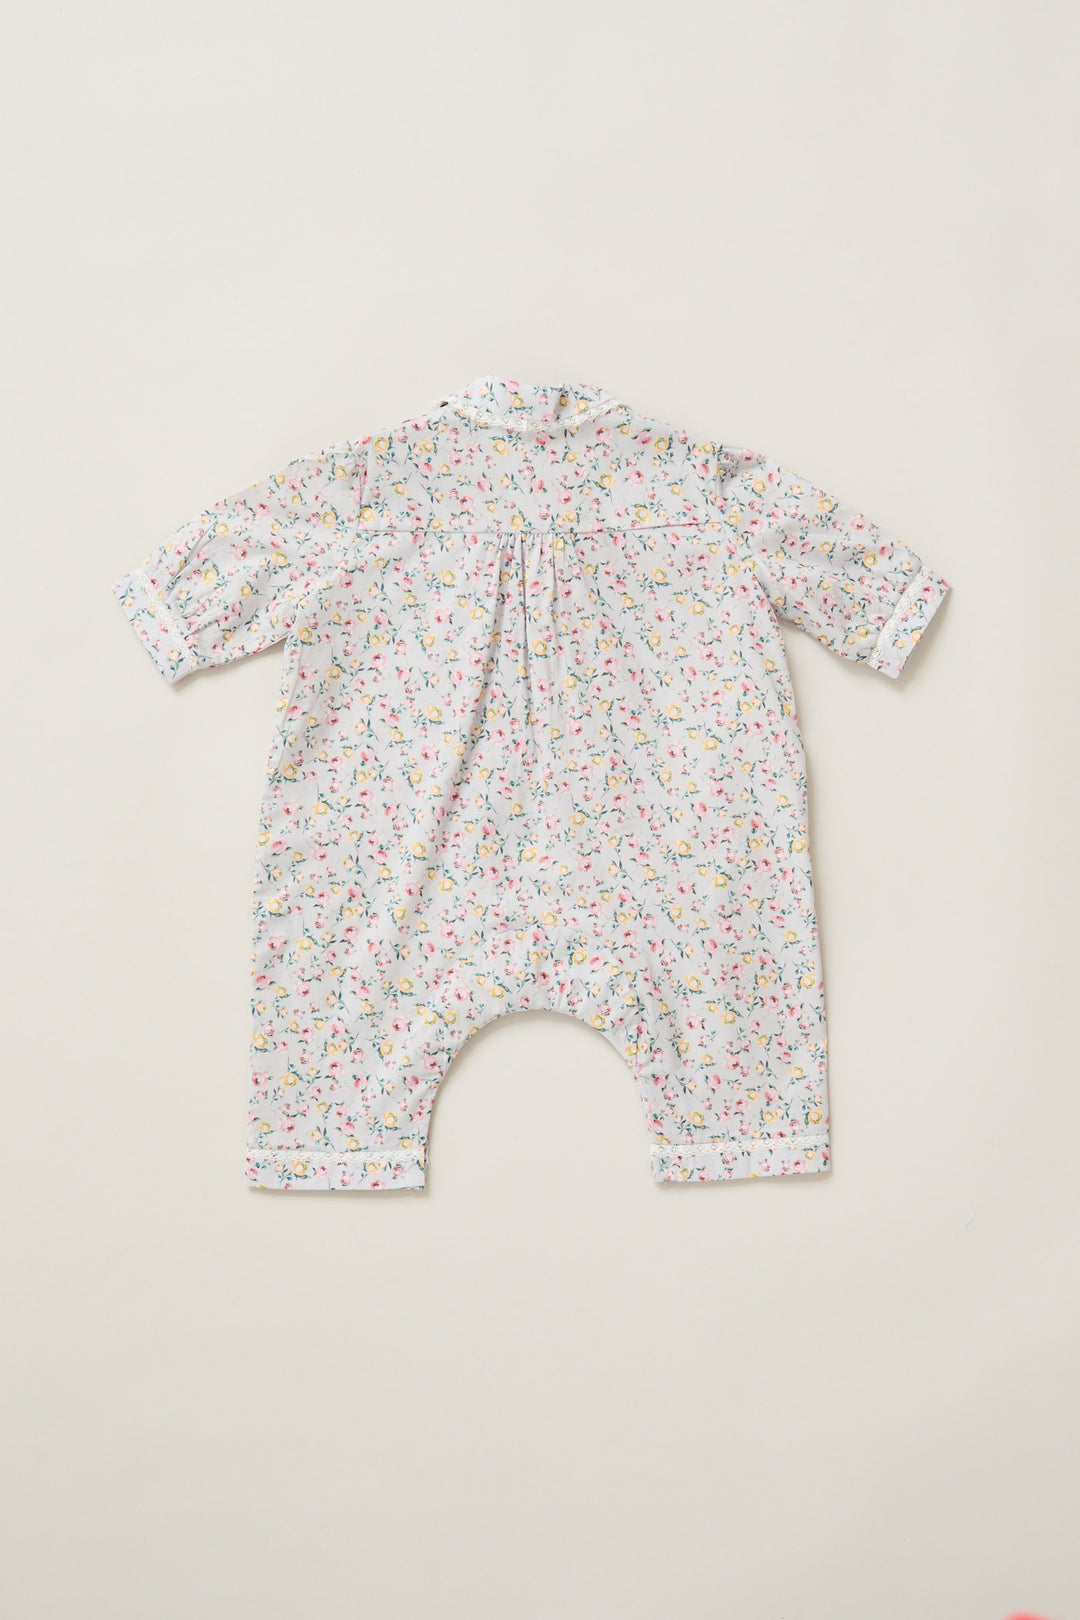 Baby Pyjama in Lavender Rose Liberty Print